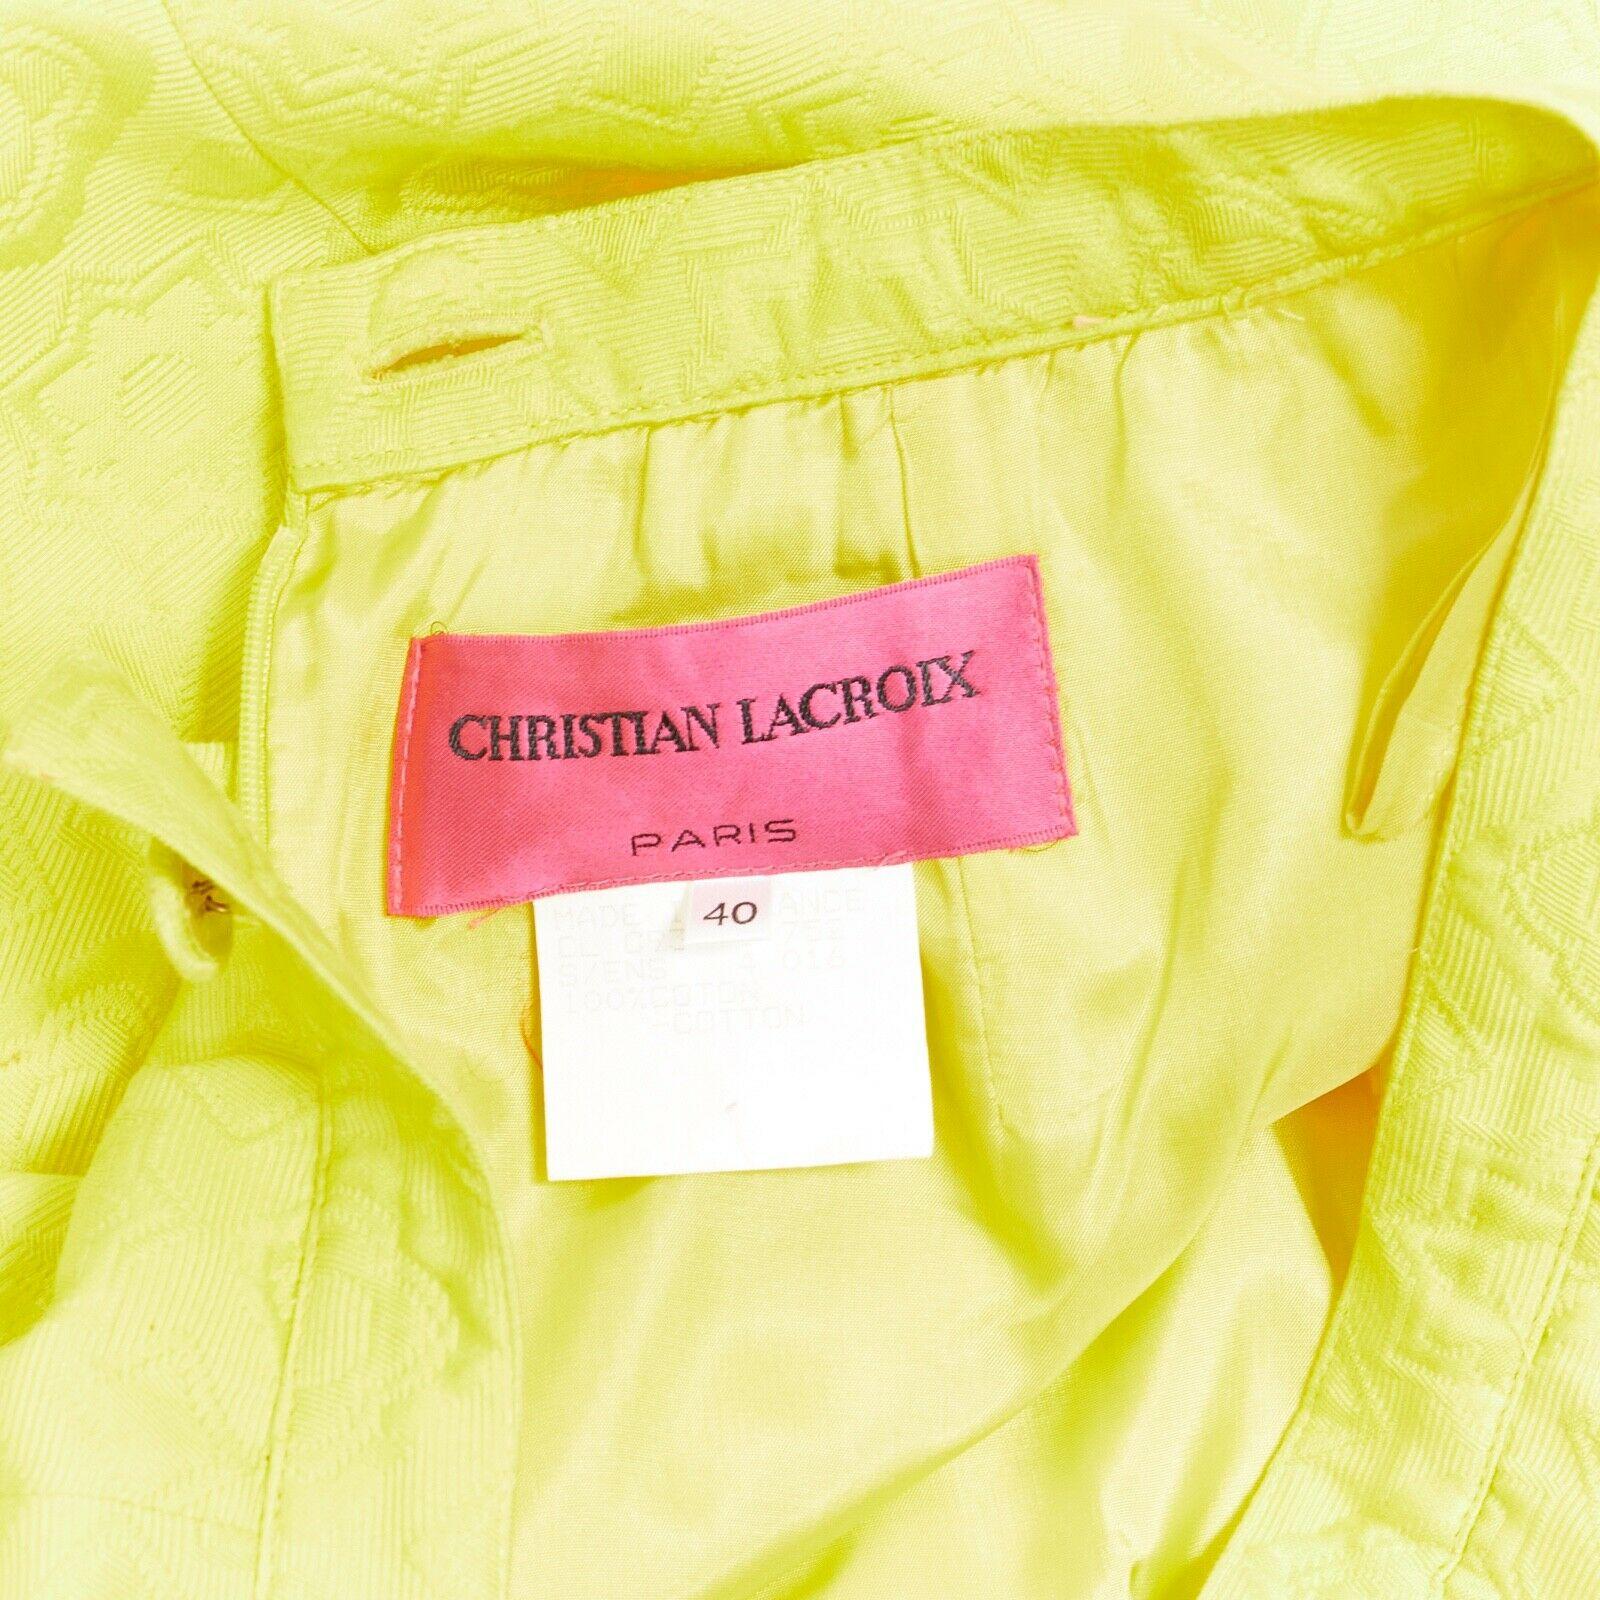 CHRISTIAN LACROIX yellow cotton floral jacquard black lace pencil skirt FR40 5